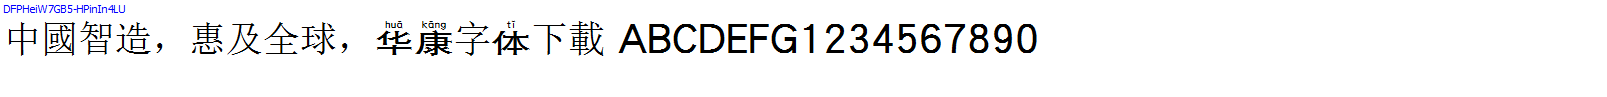 華康字體DFPHeiW7GB5-HPinIn4LU.TTF